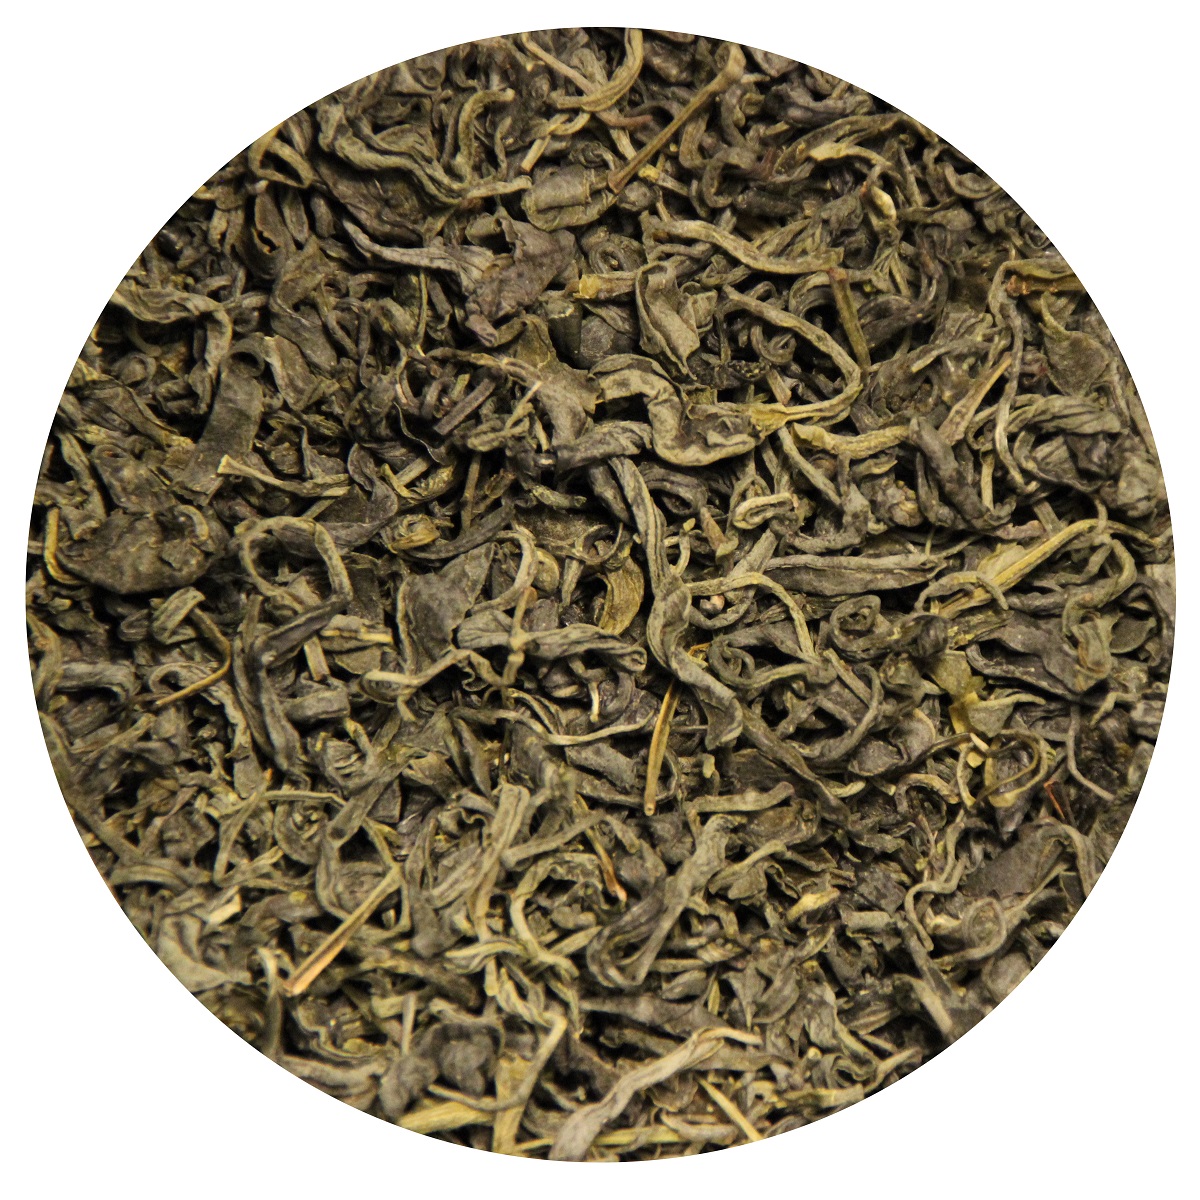 Чай зеленый грузинский сильноветвистый